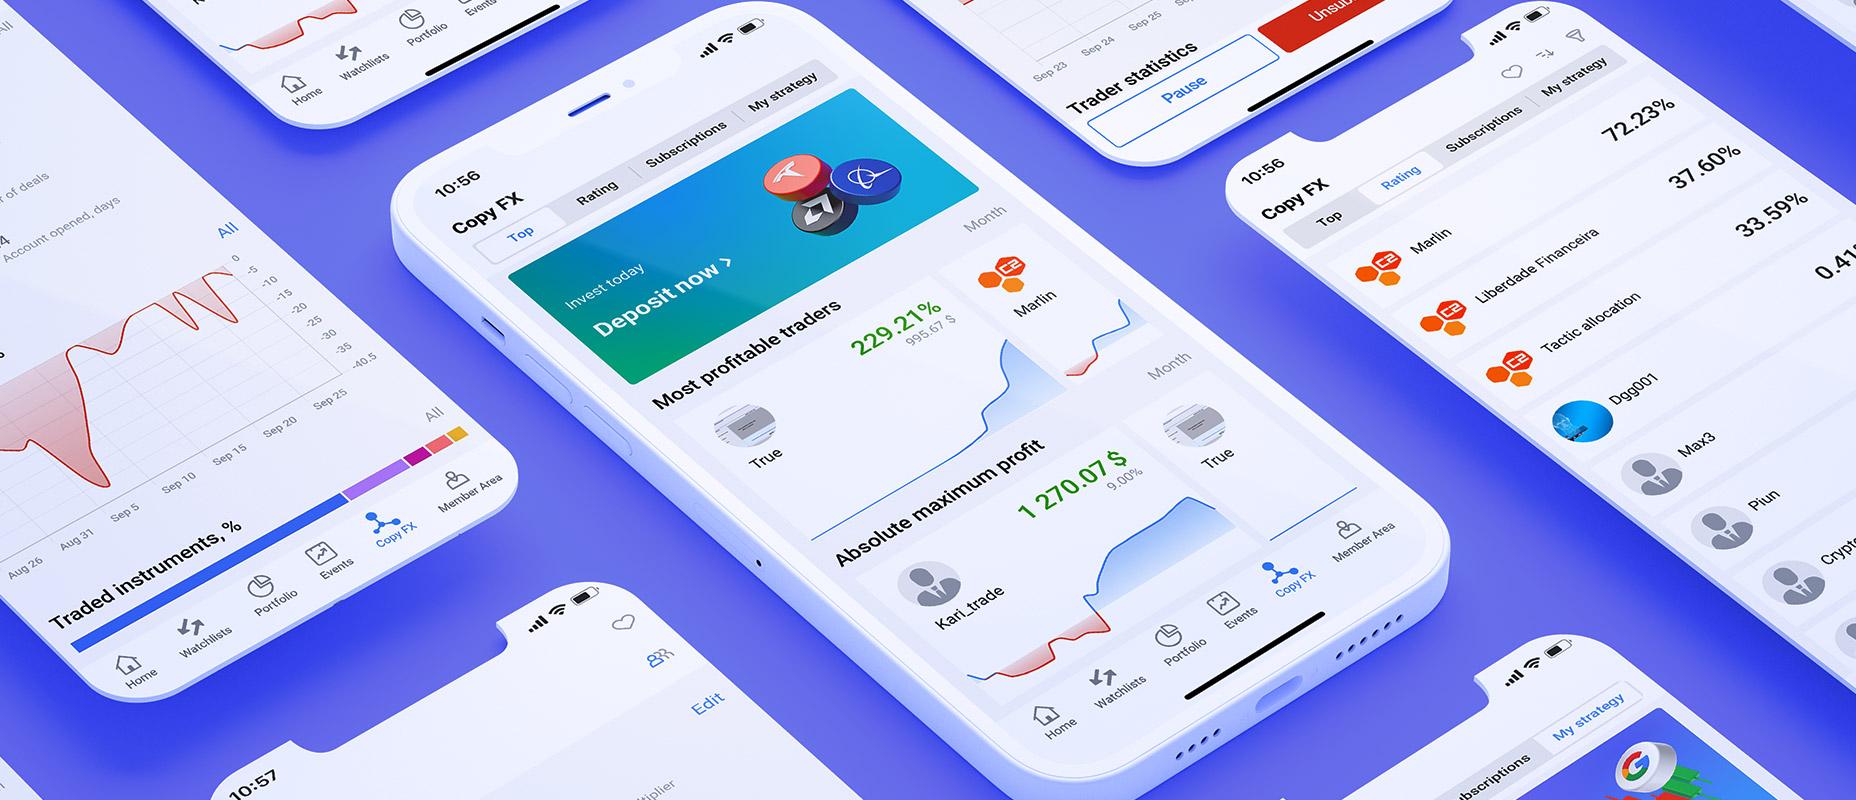 R StocksTrader lanza el copy trading en su app móvil